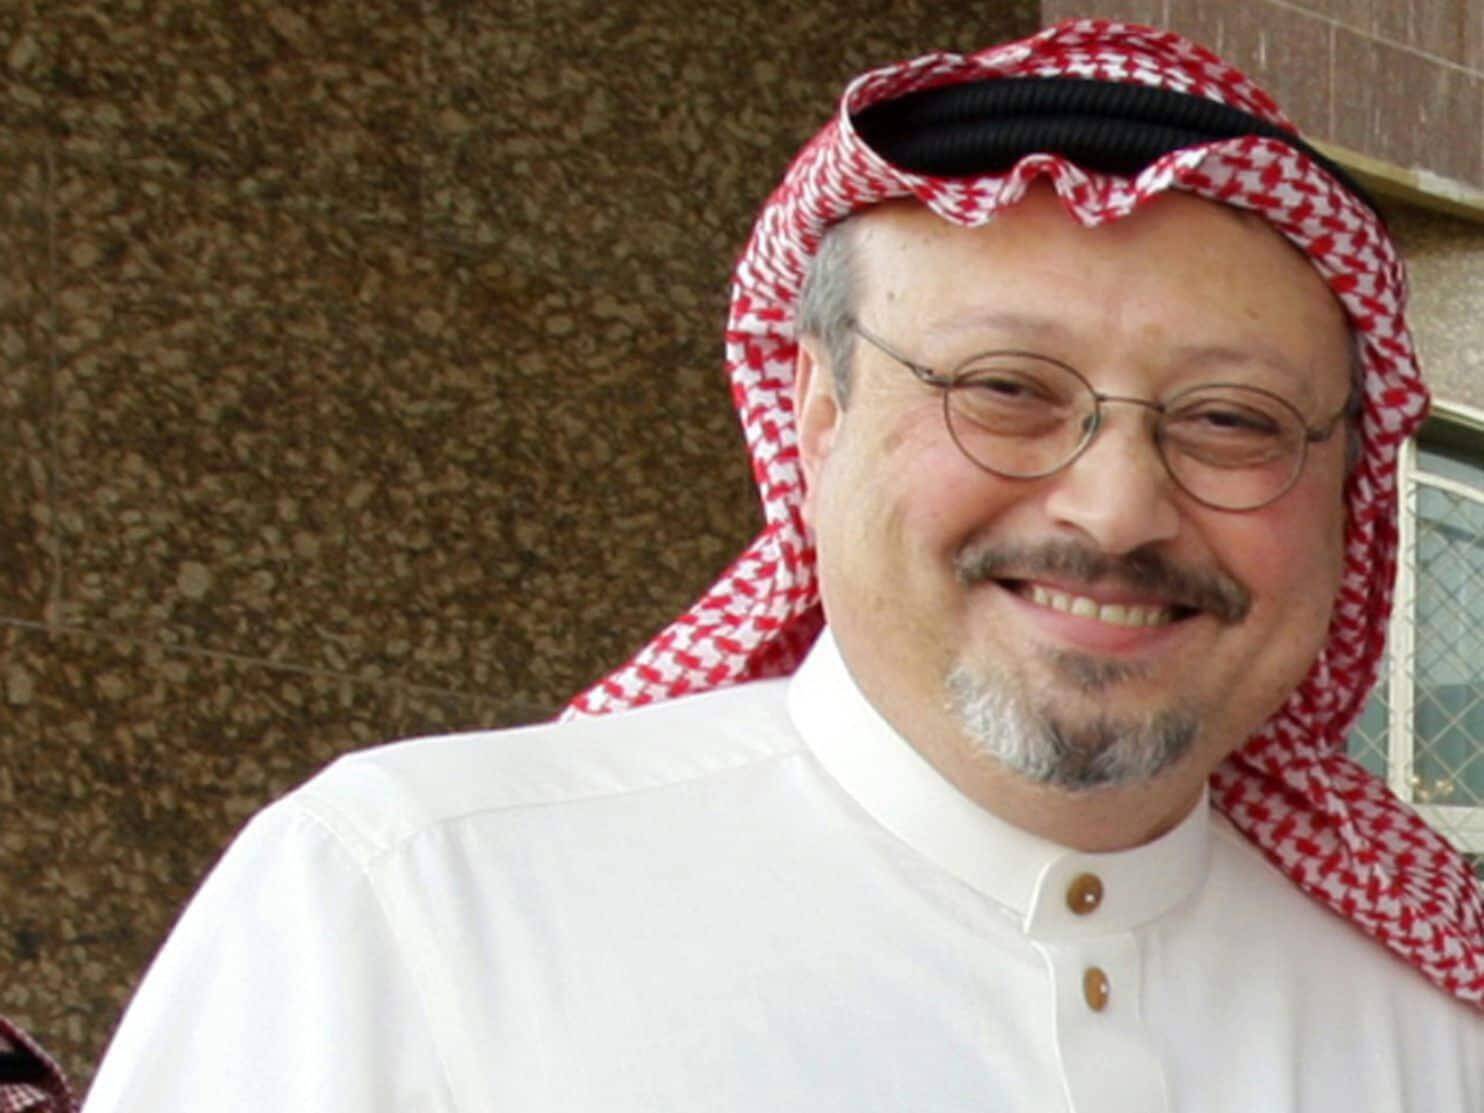 ΗΠΑ: Ο πρίγκιπας διάδοχος της Σαουδικής Αραβίας έδωσε την εντολή για τη δολοφονία Κασόγκι